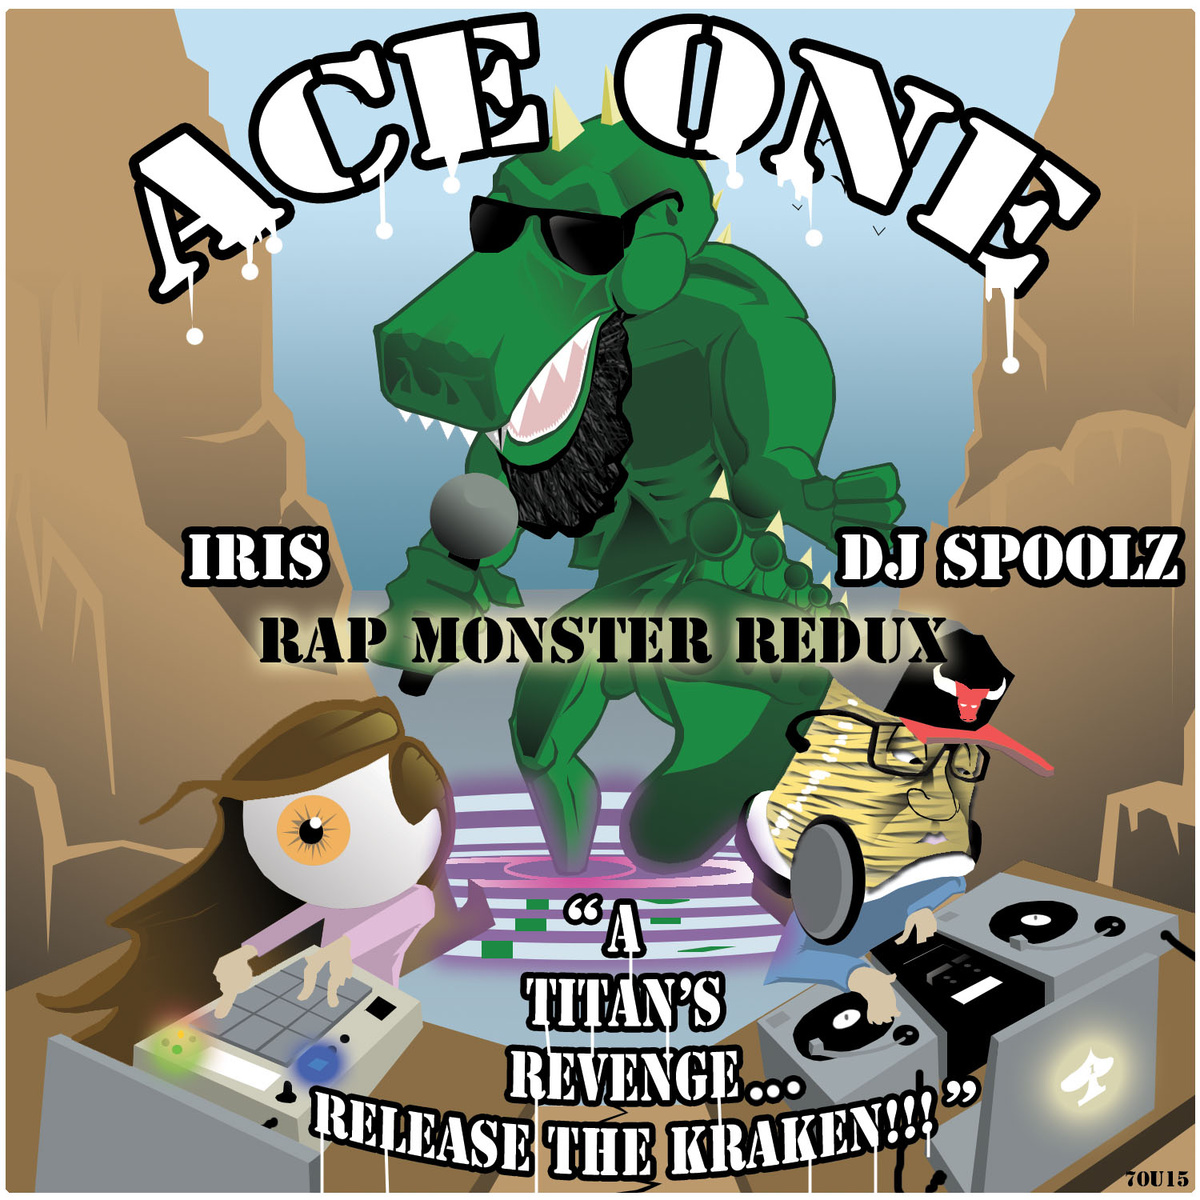 ACE ONE & IRIS - "Rap Monster Redux: A Titan's Revenge" (Release)